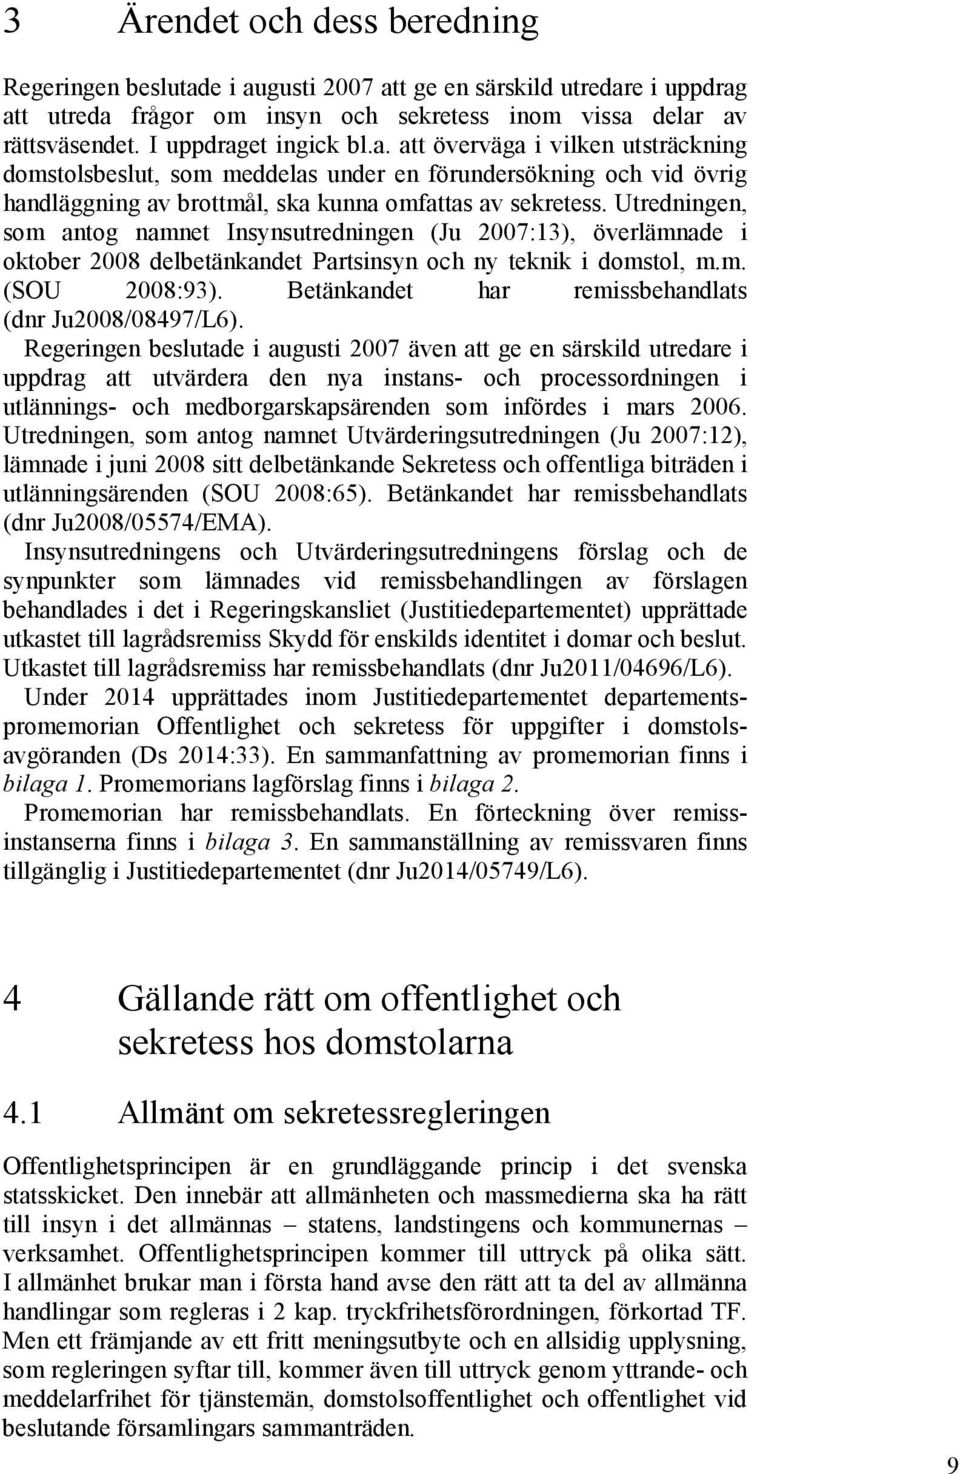 Utredningen, som antog namnet Insynsutredningen (Ju 2007:13), överlämnade i oktober 2008 delbetänkandet Partsinsyn och ny teknik i domstol, m.m. (SOU 2008:93).